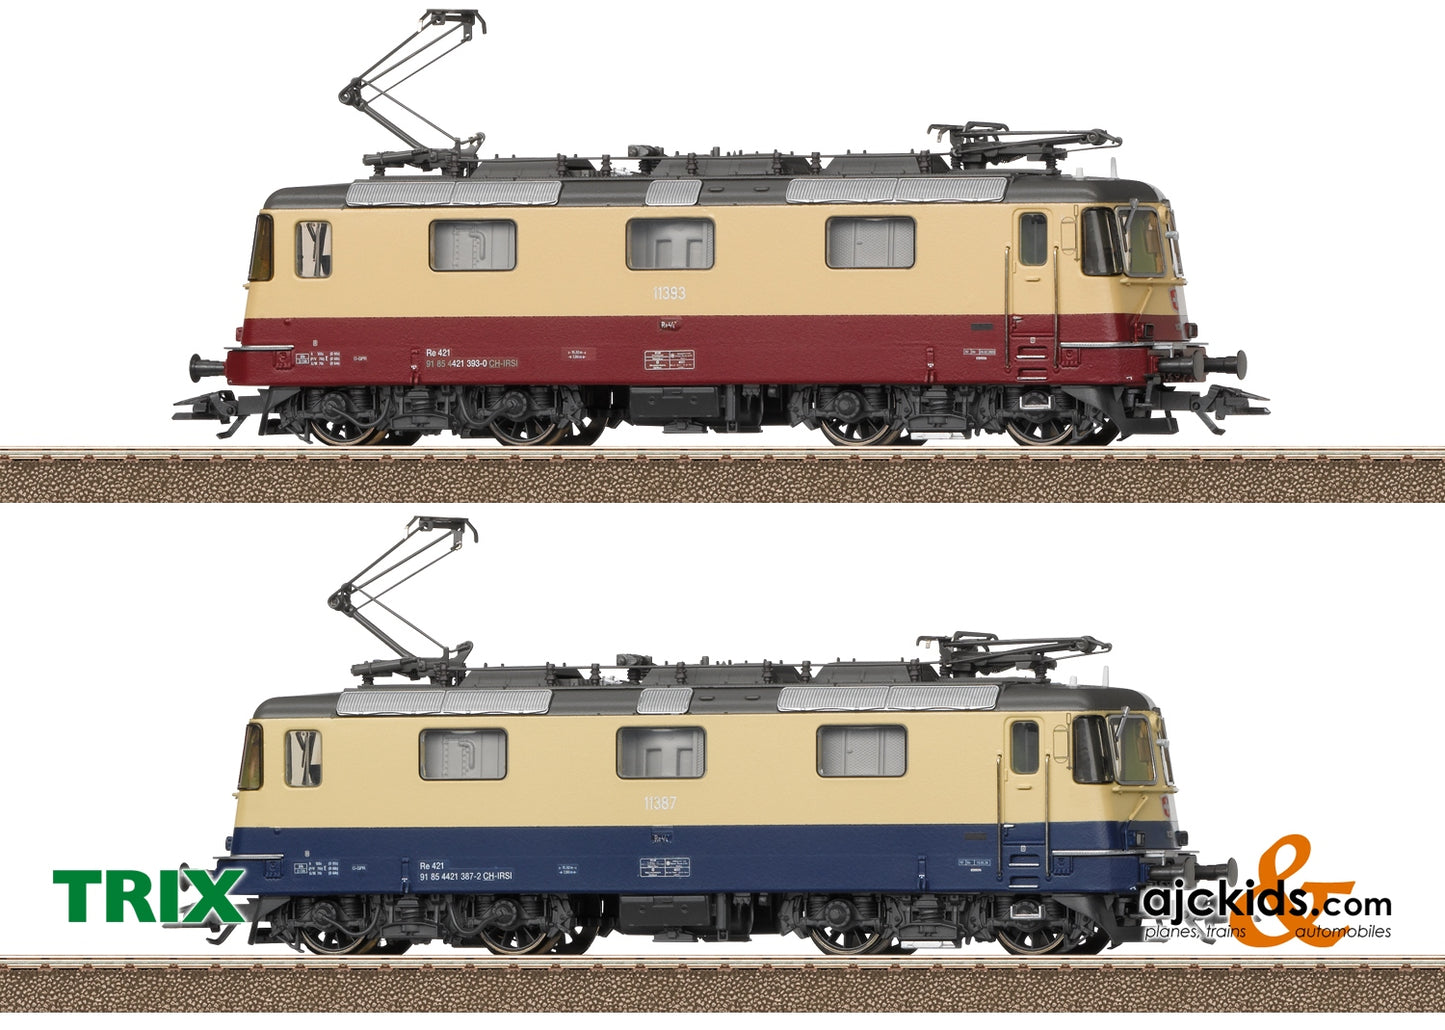 Trix 25100 - Class Re 421 Double Electric Locomotive Set